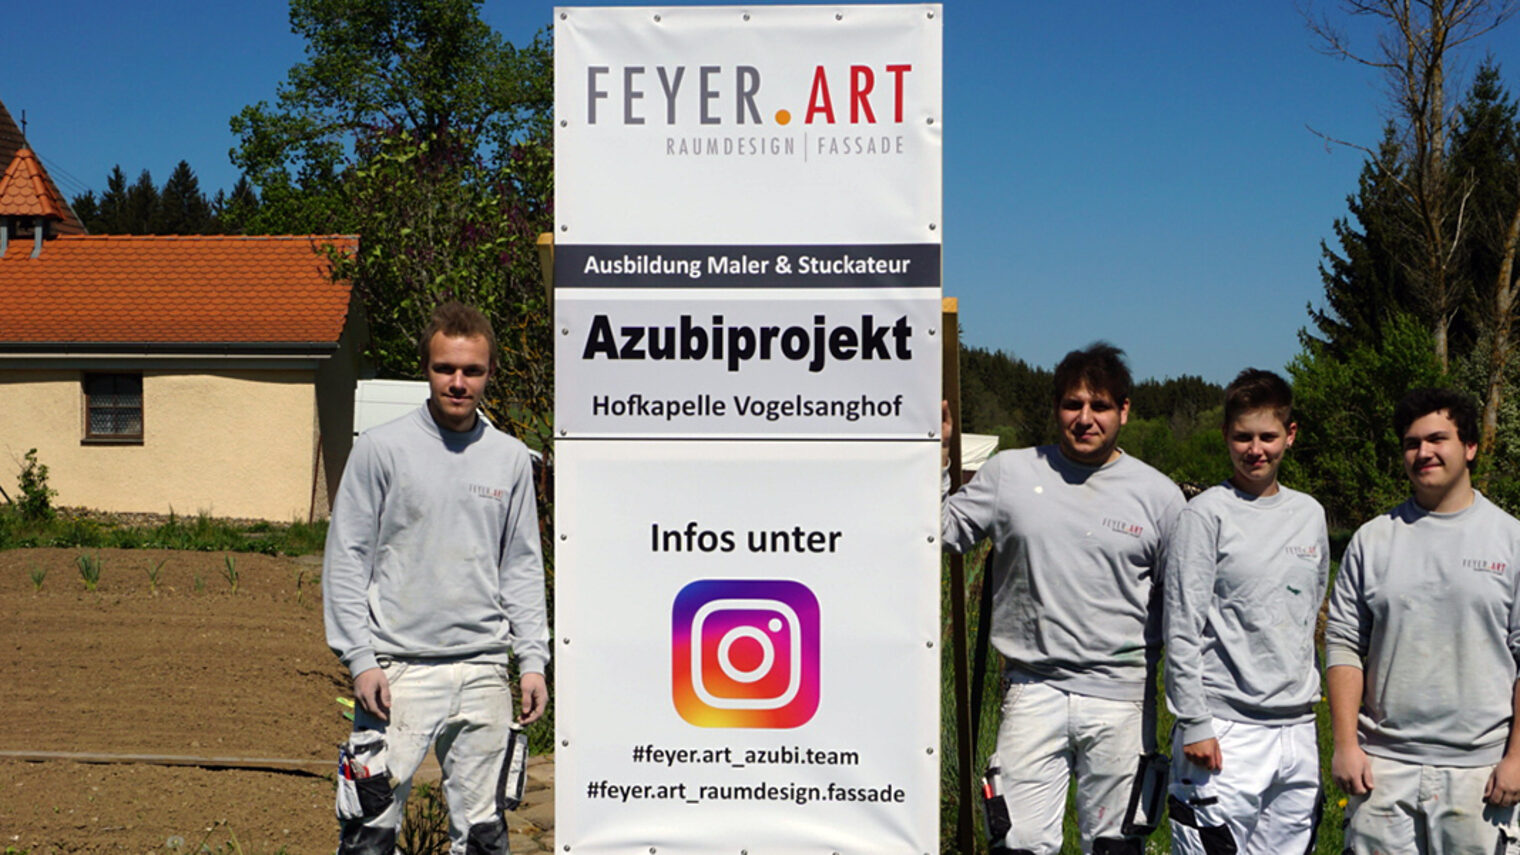 Timo Tauser, Haxhi Tahiri, Alexandra Ganter und Raphael Burger von FEYER.ART vor der kleinen Hofkapelle Vogelsanghof.